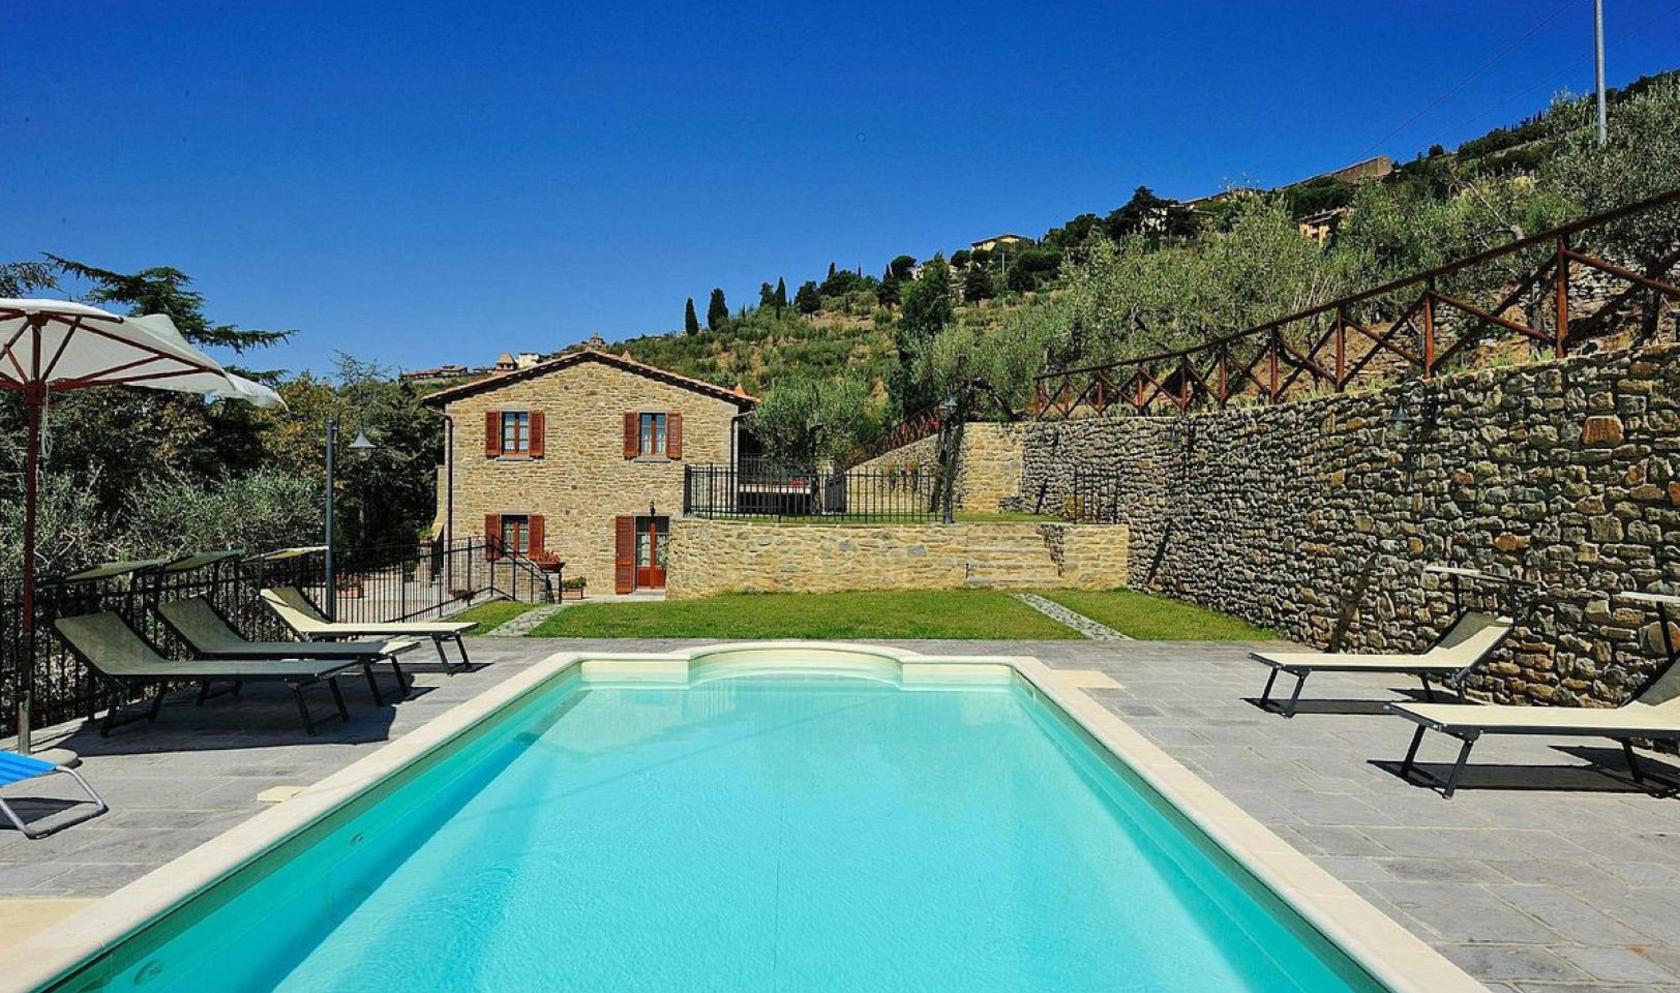 Toscana Immobiliare - Incorniciata dall'incantevole paesaggio collinare toscano, questa bella casa colonica in vendita è ubicata, in posizione panoramica, a brevissima distanza da Cortona. 